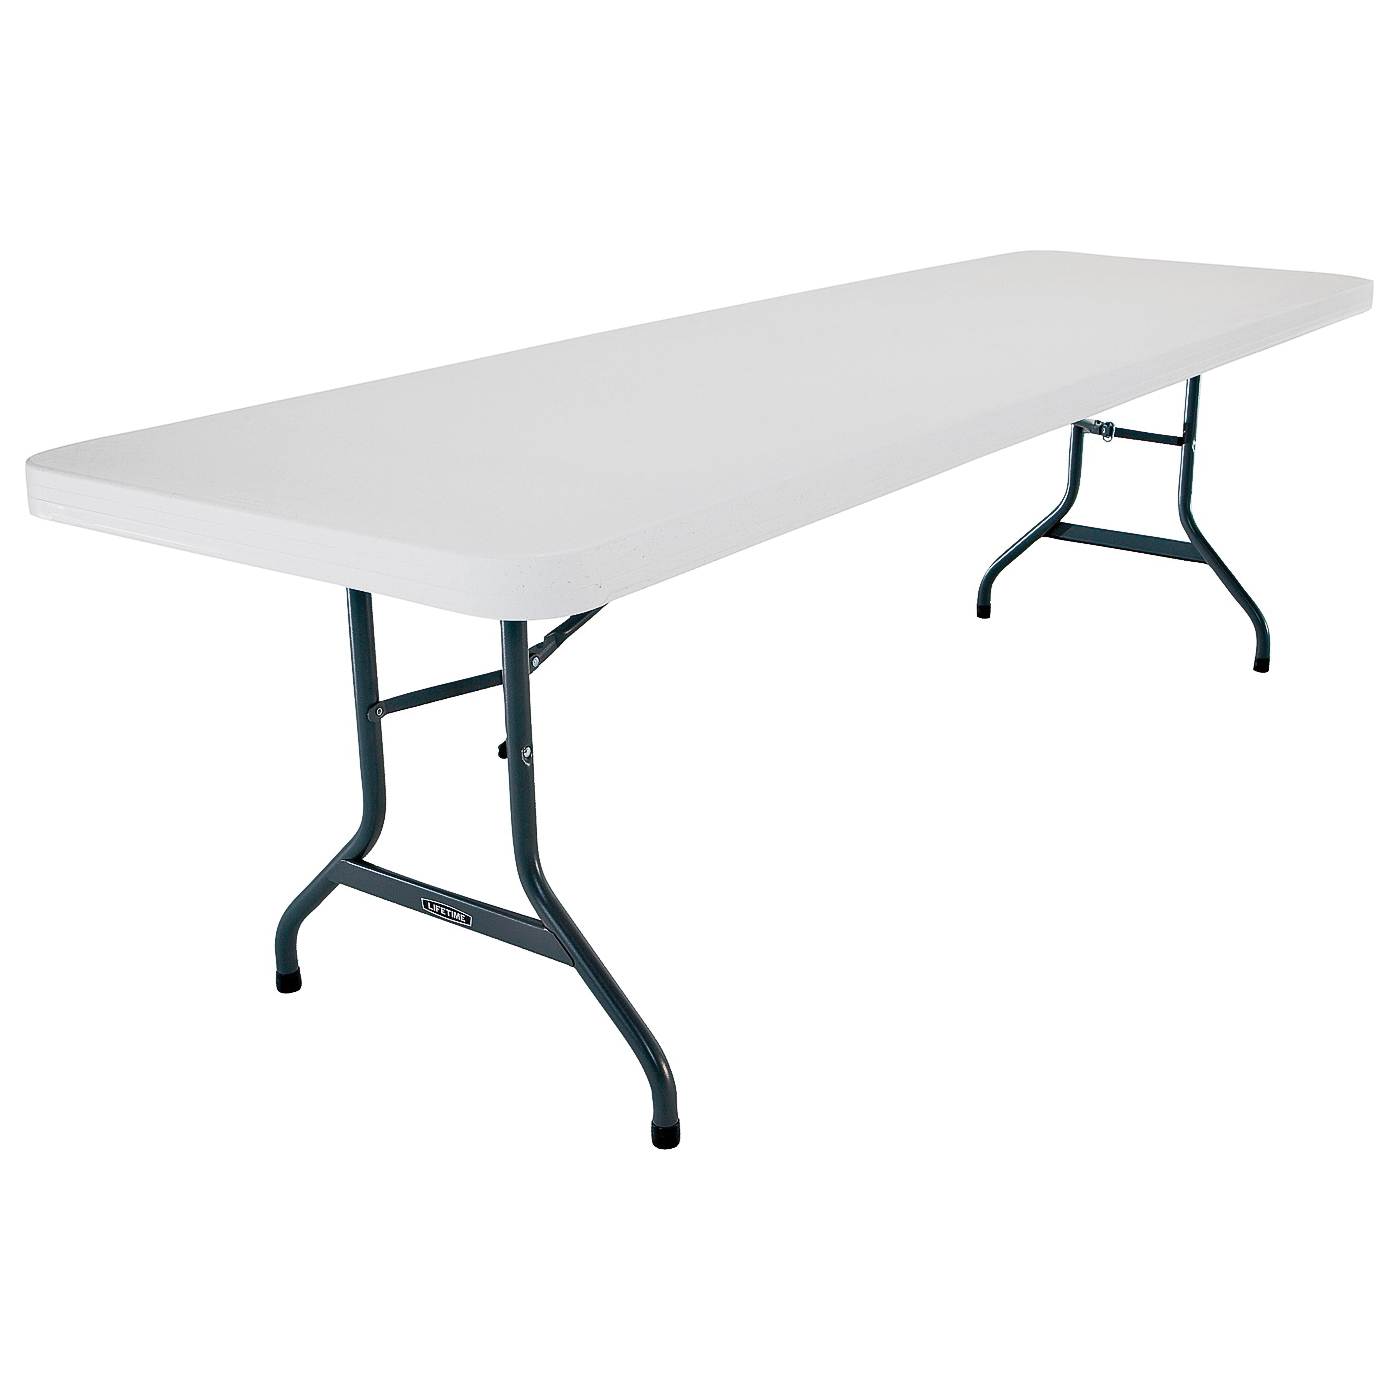 2980 Folding Table, Steel Frame, Polyethylene Tabletop, Gray/White